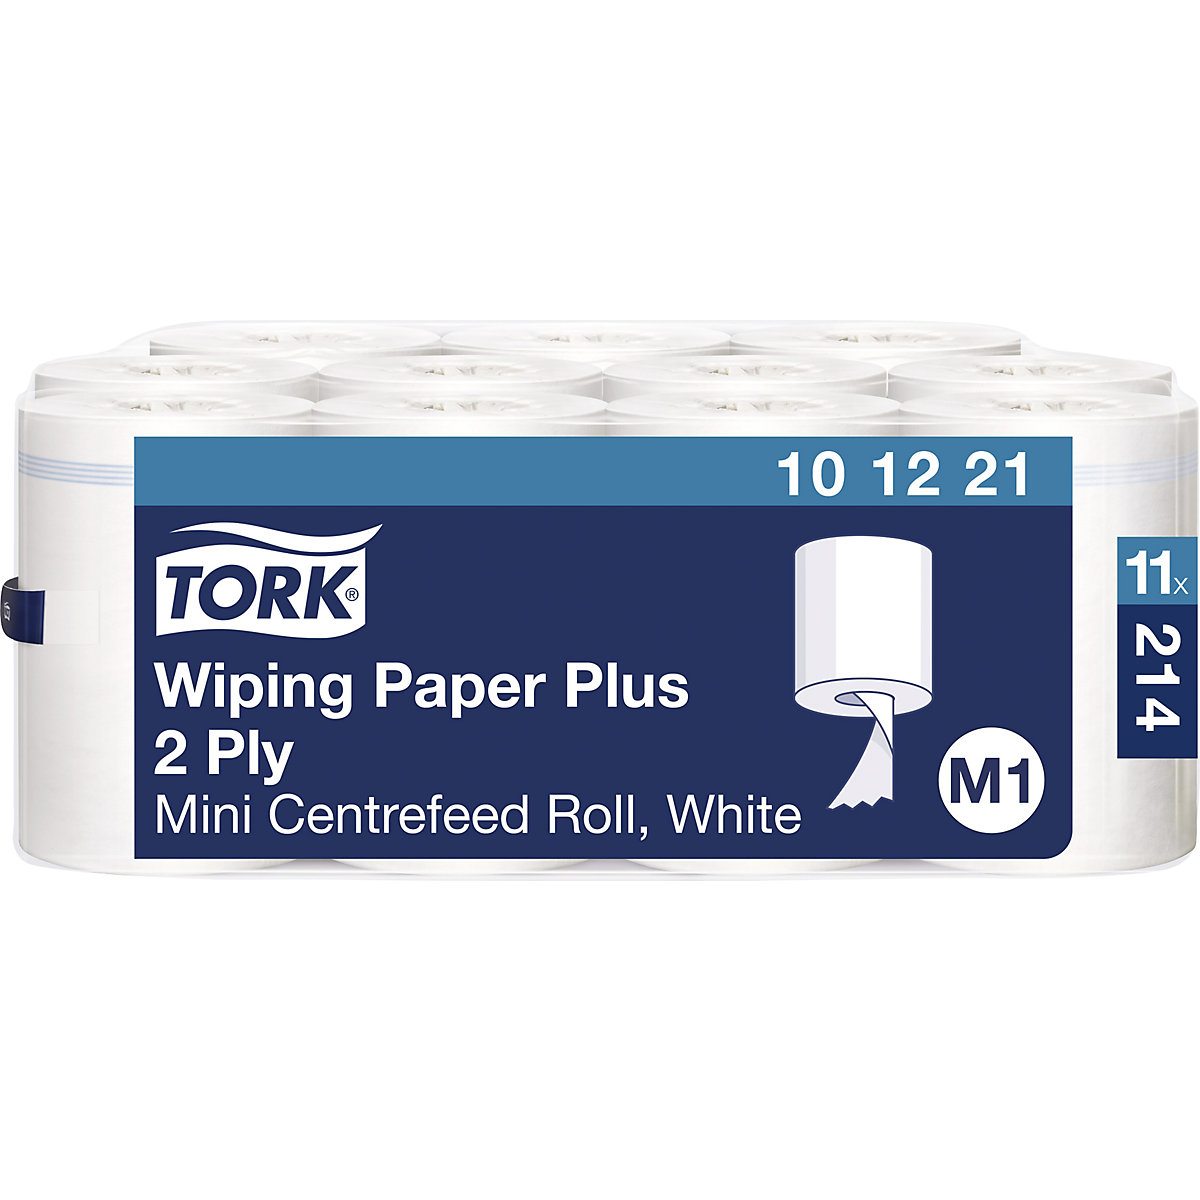 Silné víceúčelové papírové utěrky Mini s vnitřním odvíjením – TORK